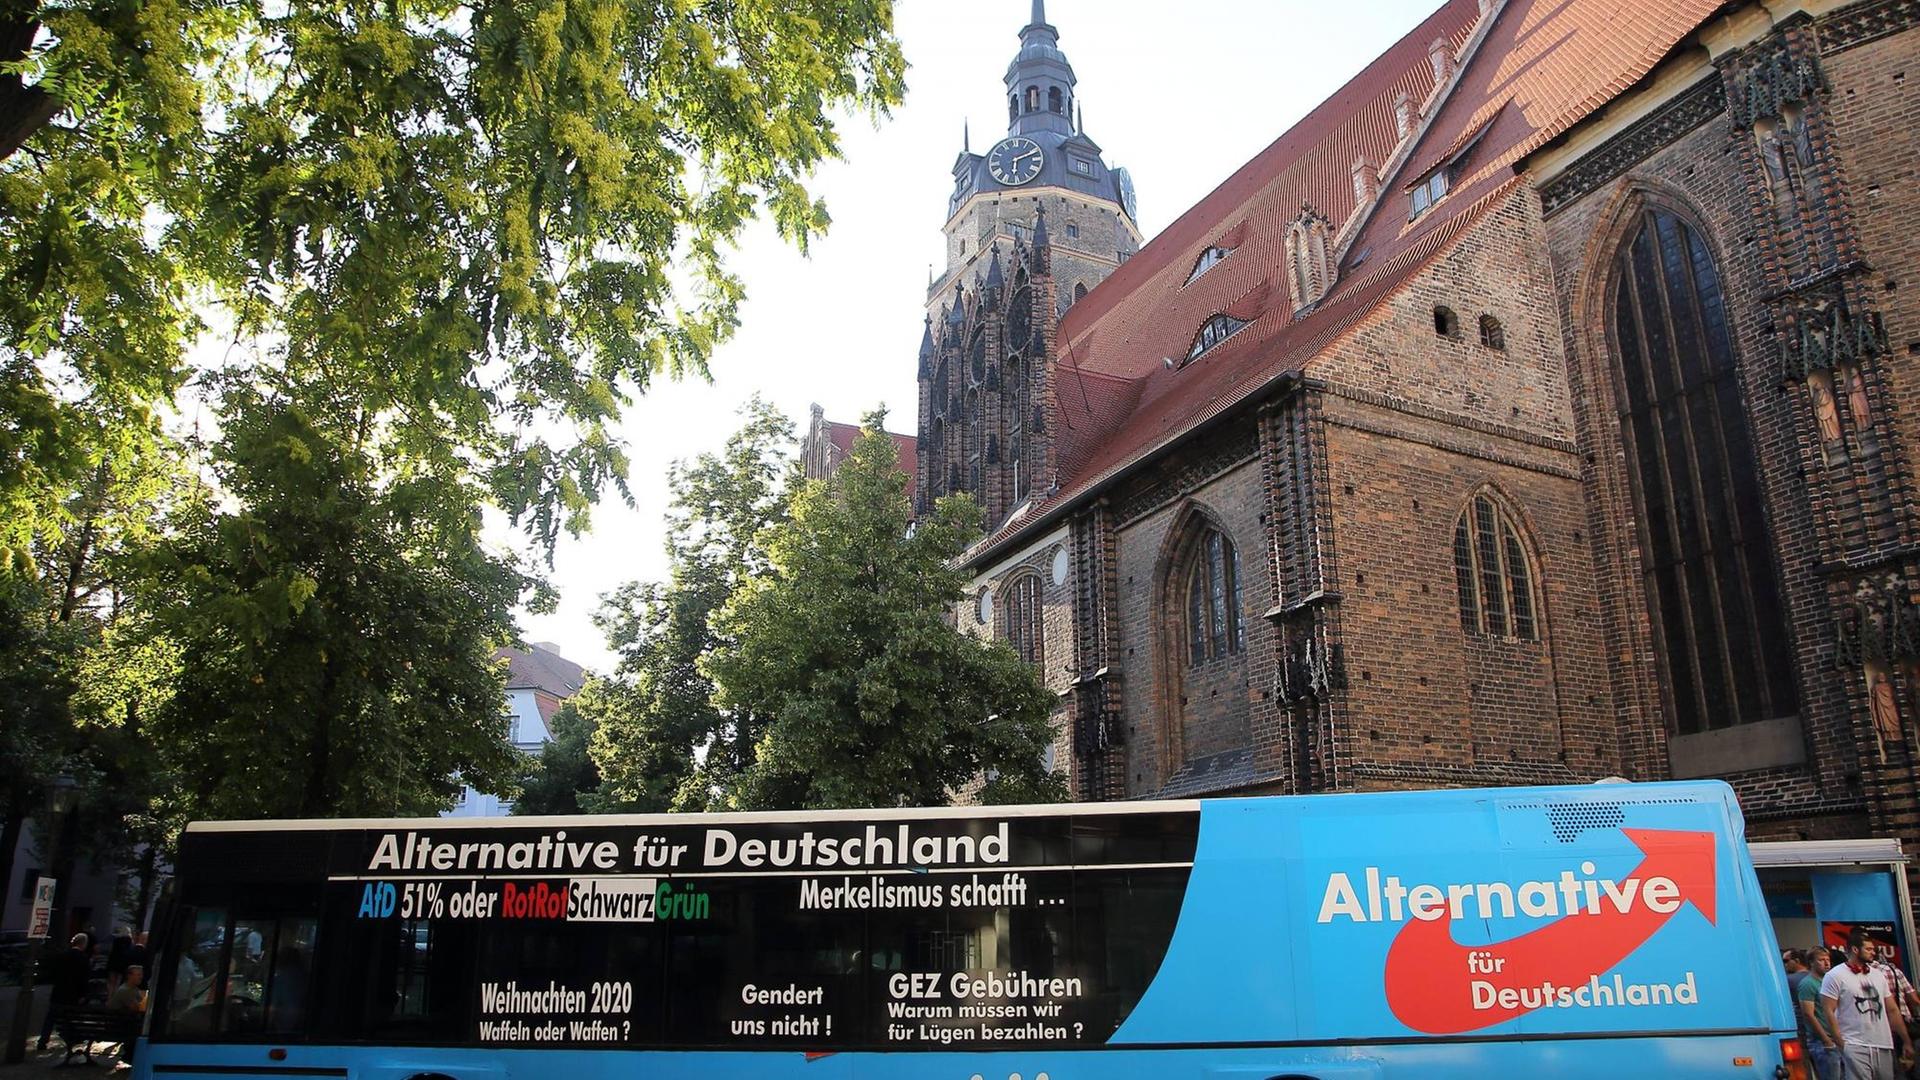 Wahlkampfbus der AfD an der Katharinenkirche während einer Protestkundgebung gegen den Wahlkampfauftritt von Bundeskanzlerin Angela Merkel in Brandenburg an der Havel, 29. August 2017